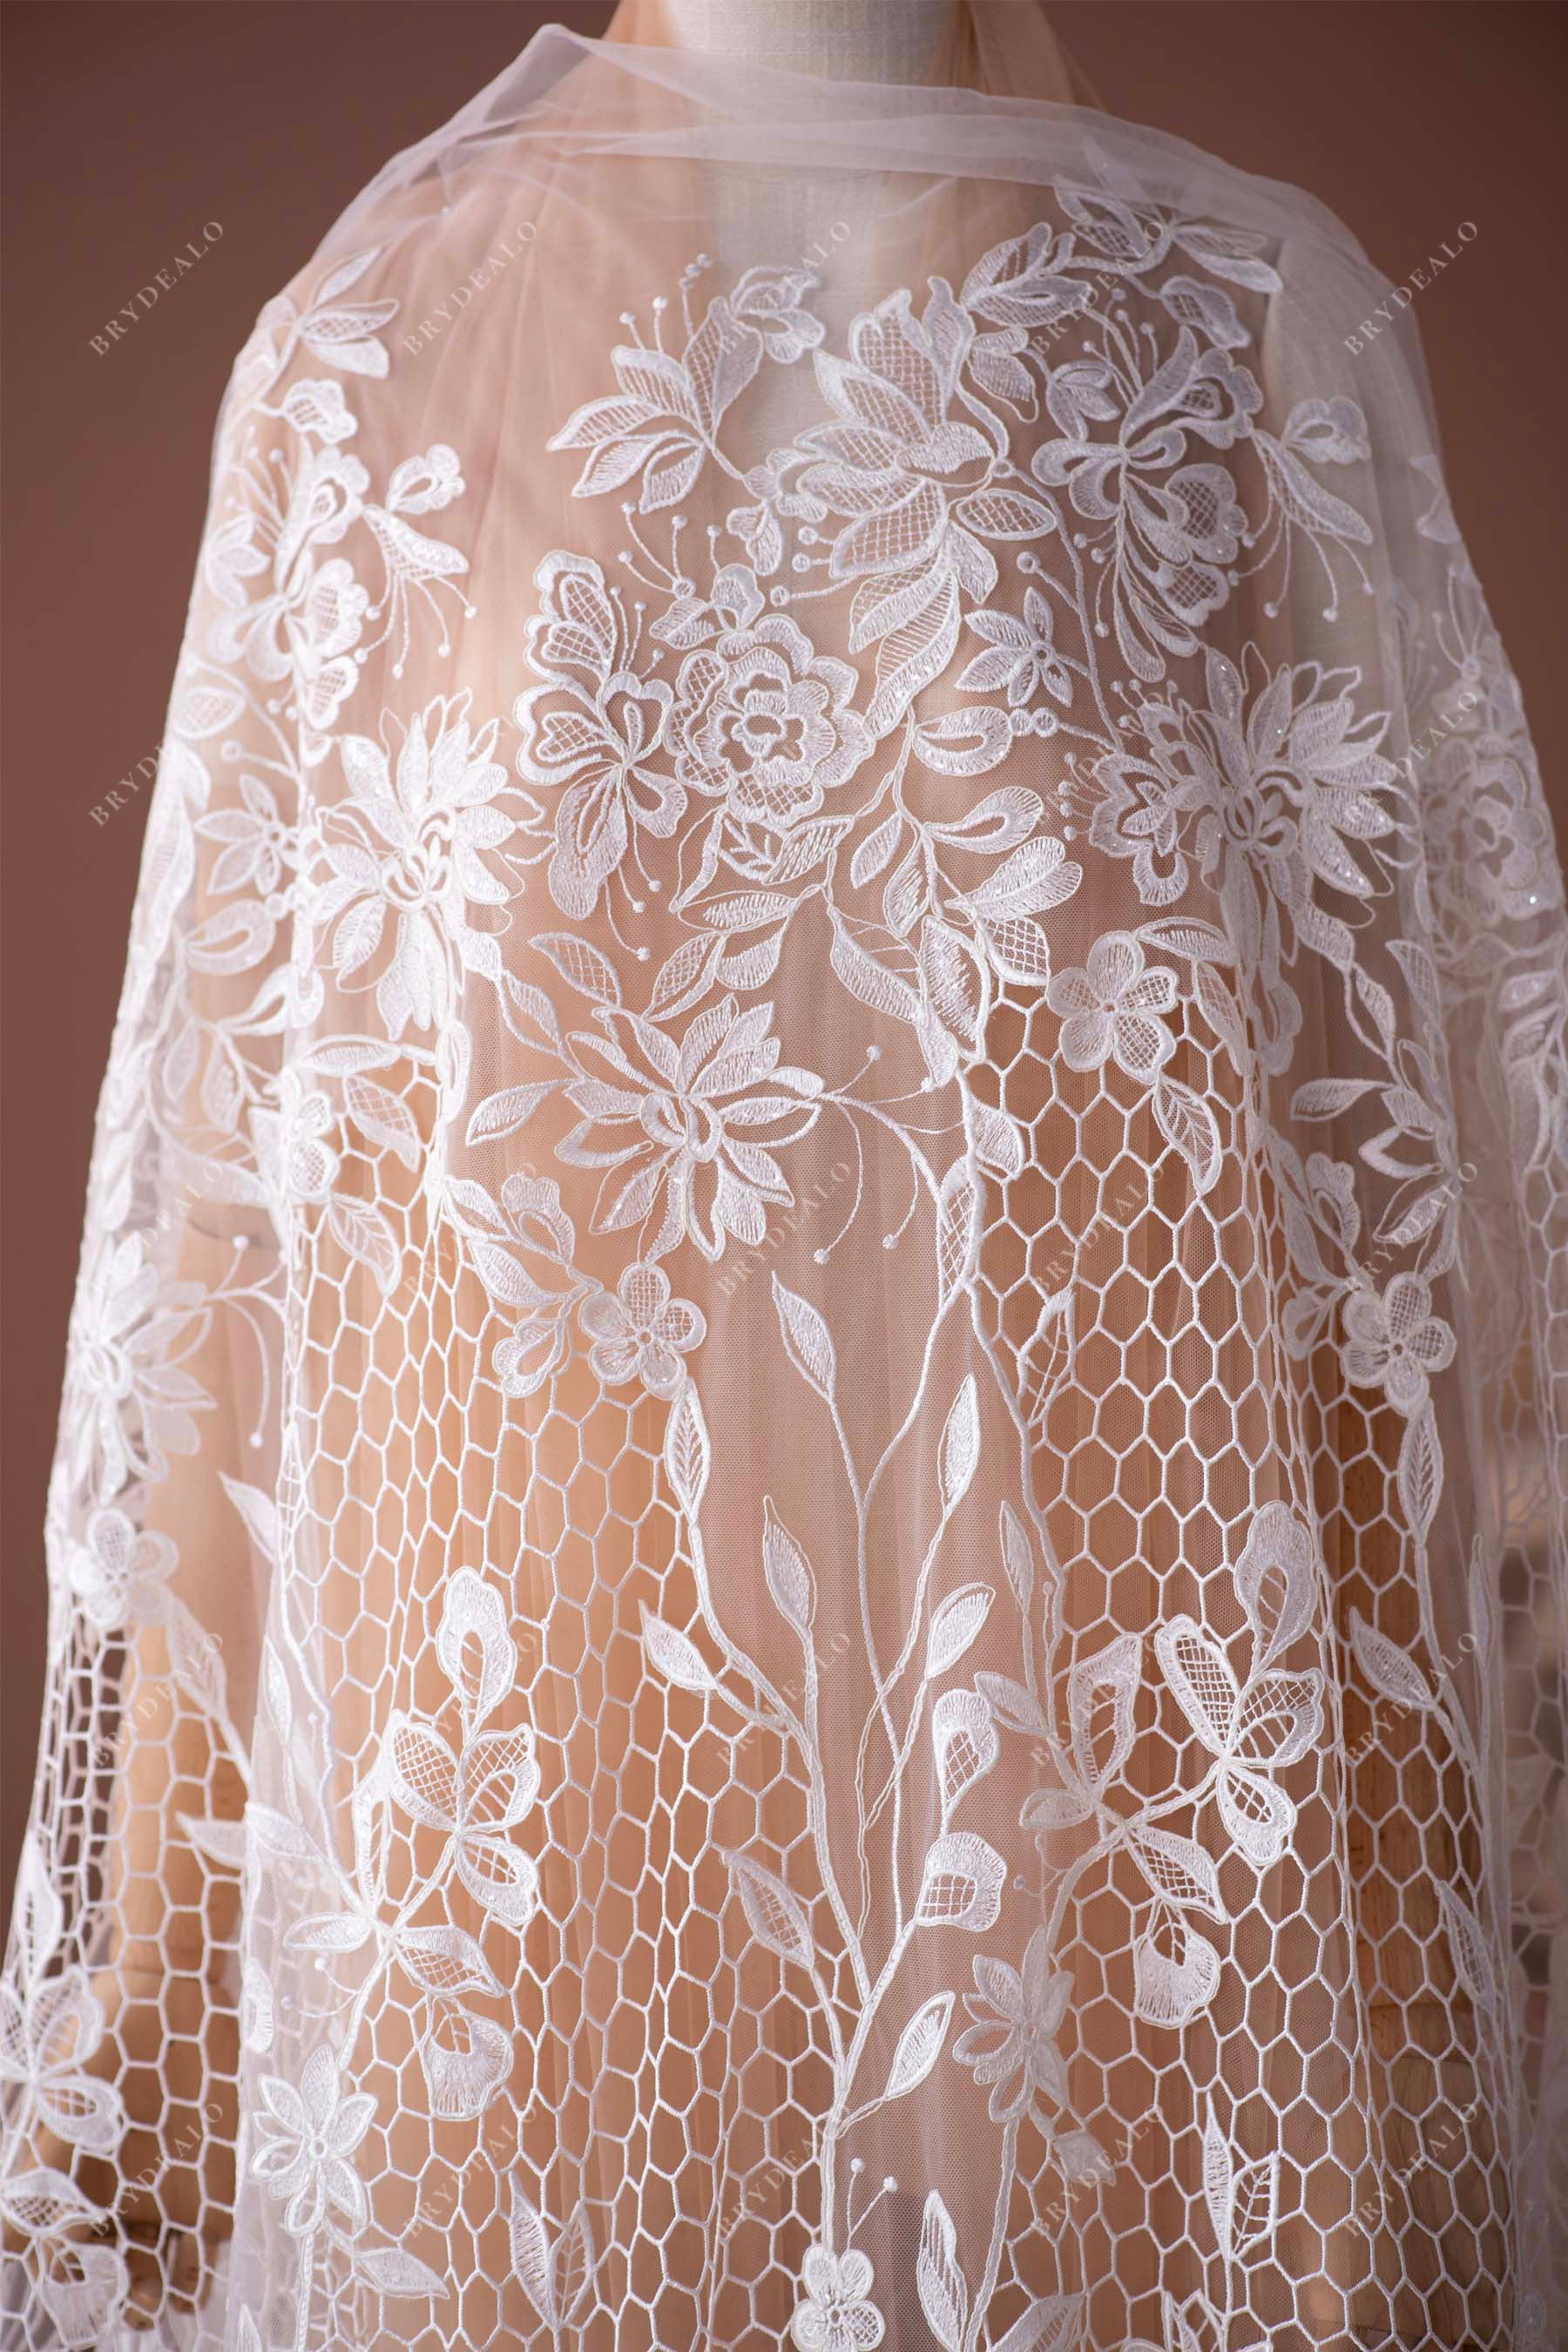 boho designer wedding dress lace fabric for wholesale